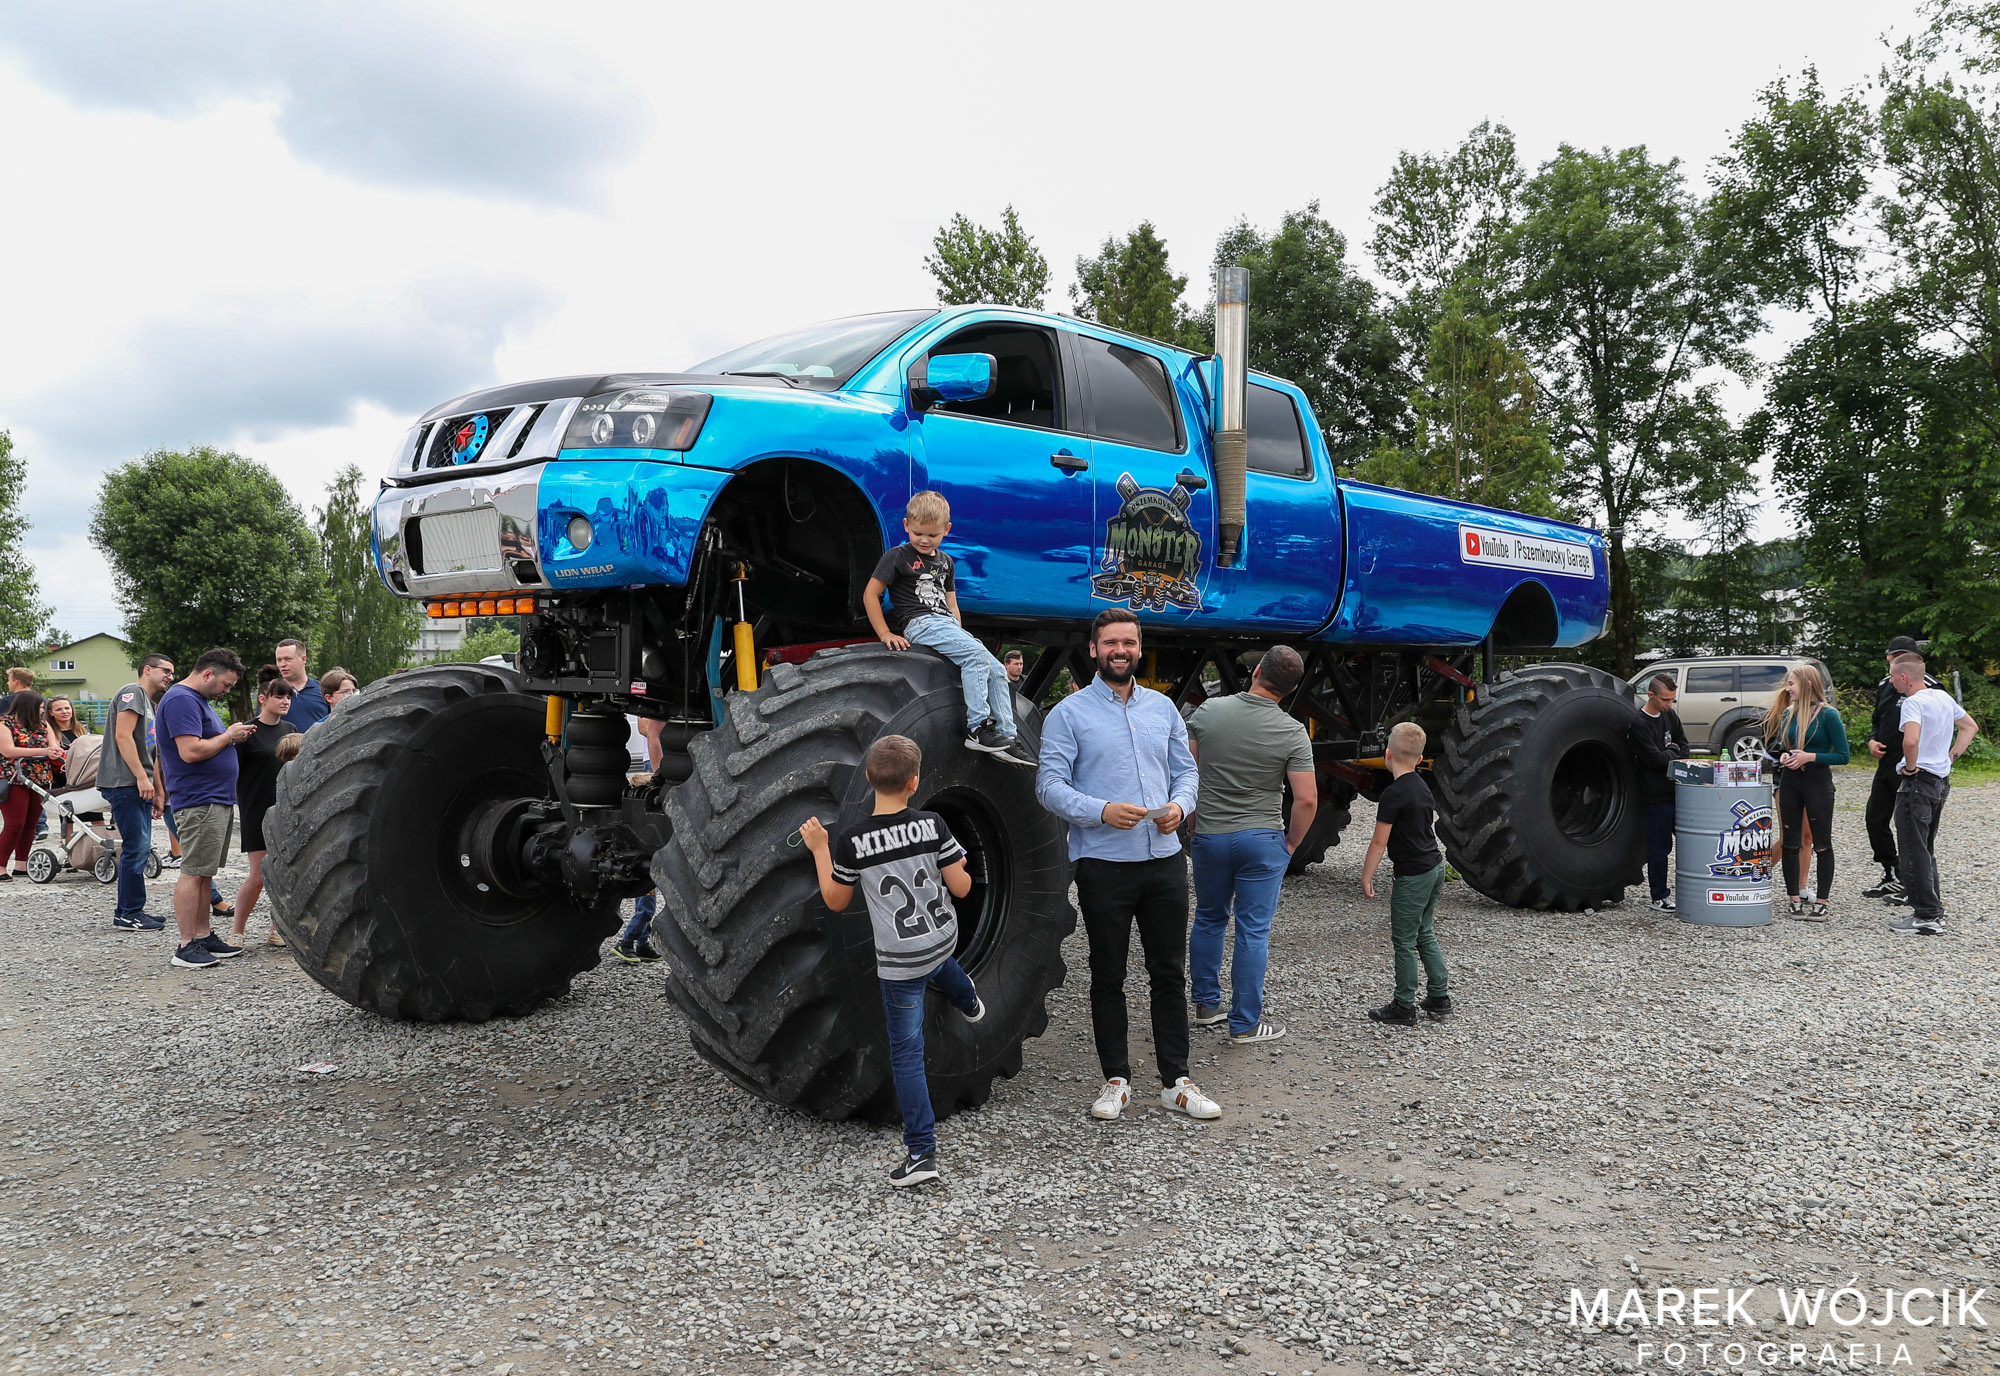 Ogromny samochód monster truck koloru niebieskiego stoi na placu kamienistym. Z boku ogląda go grupa osób.